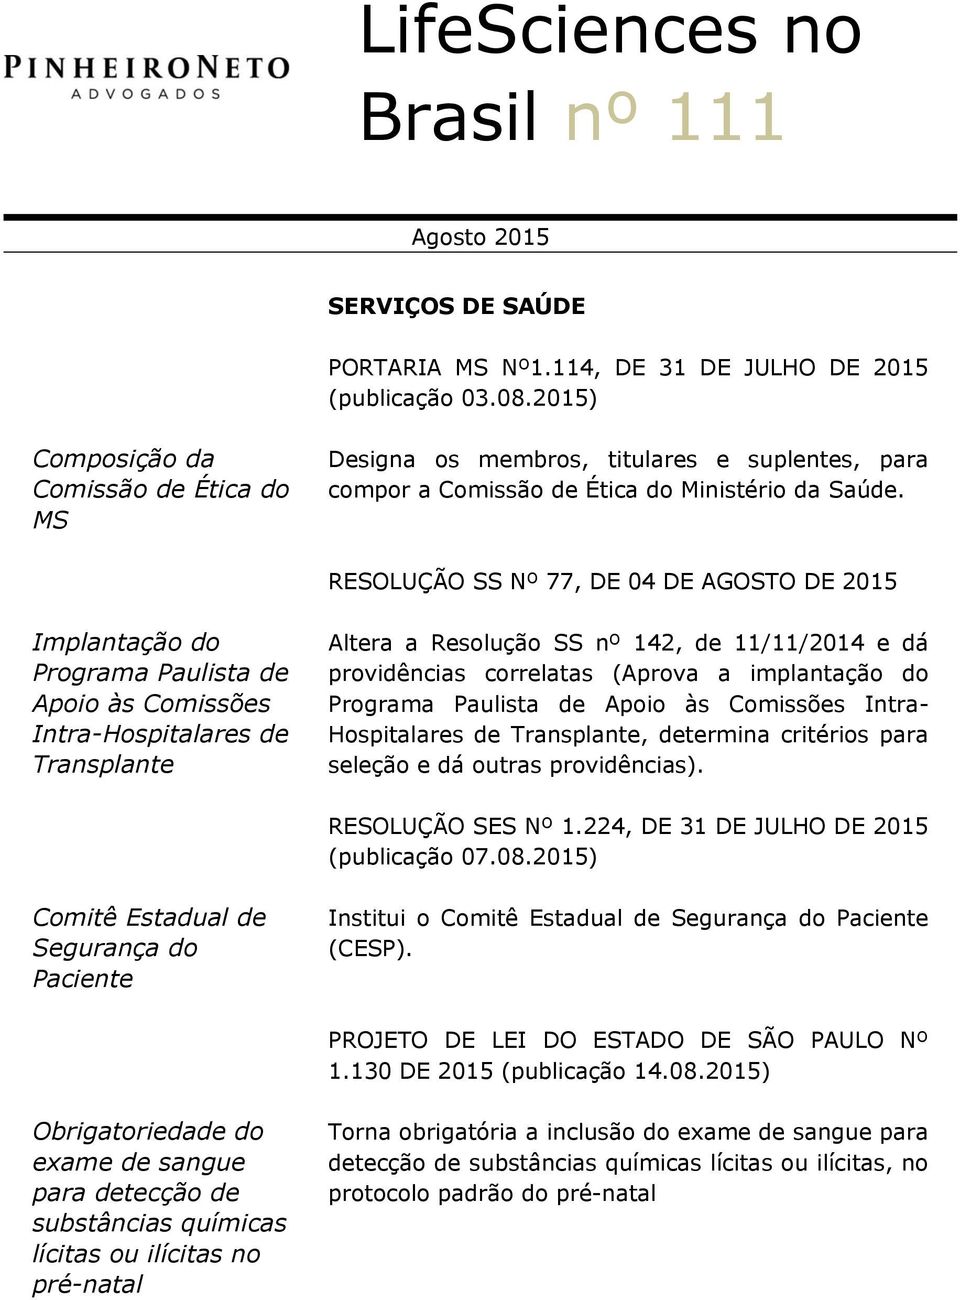 RESOLUÇÃO SS Nº 77, DE 04 DE AGOSTO DE 2015 Implantação do Programa Paulista de Apoio às Comissões Intra-Hospitalares de Transplante Altera a Resolução SS nº 142, de 11/11/2014 e dá providências